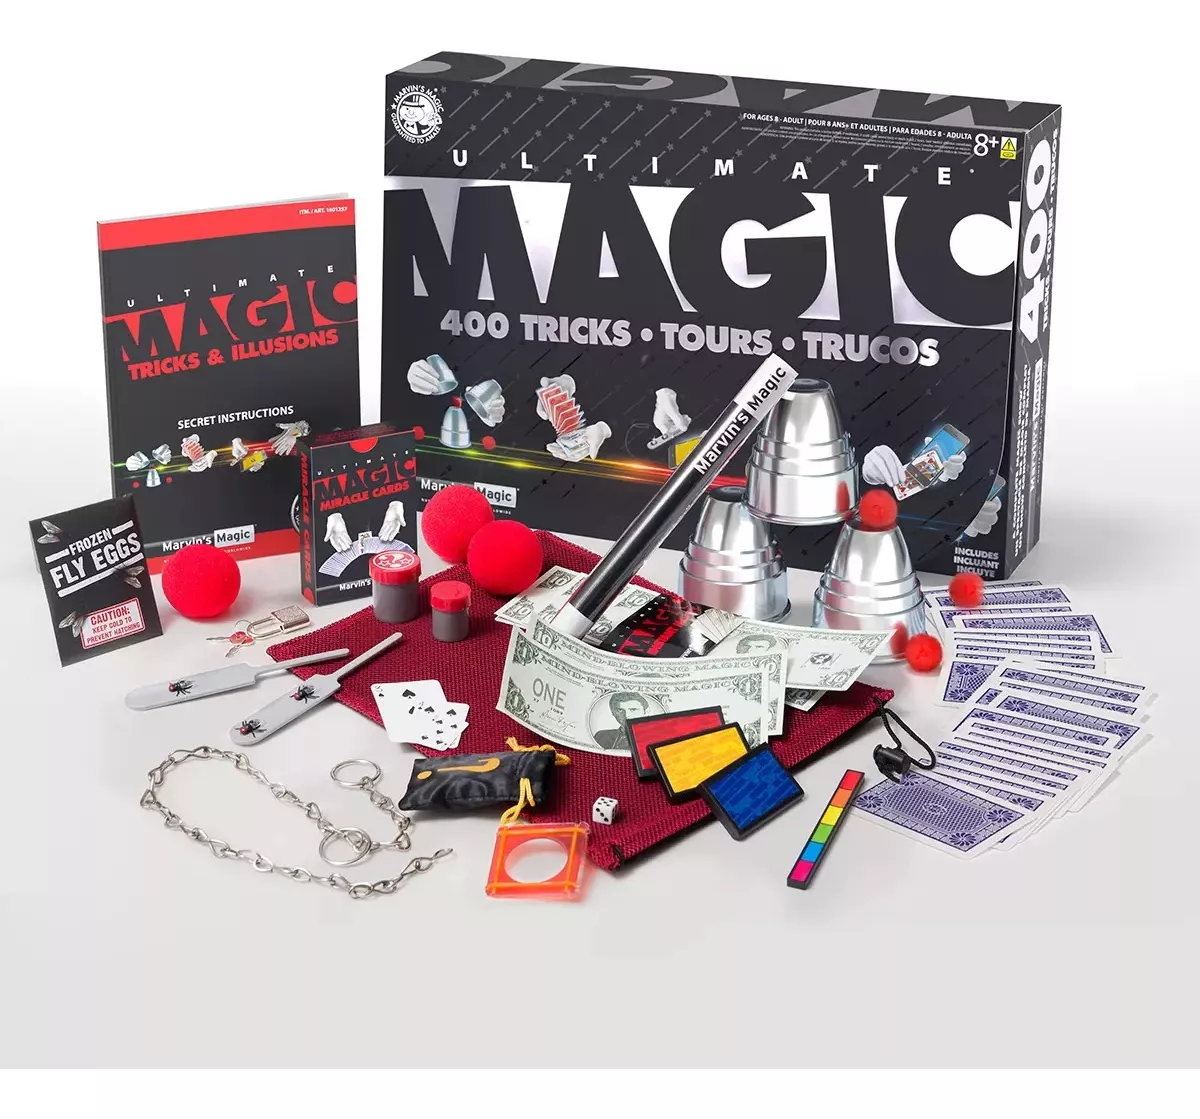 Primera imagen para búsqueda de tienda de trucos de magia